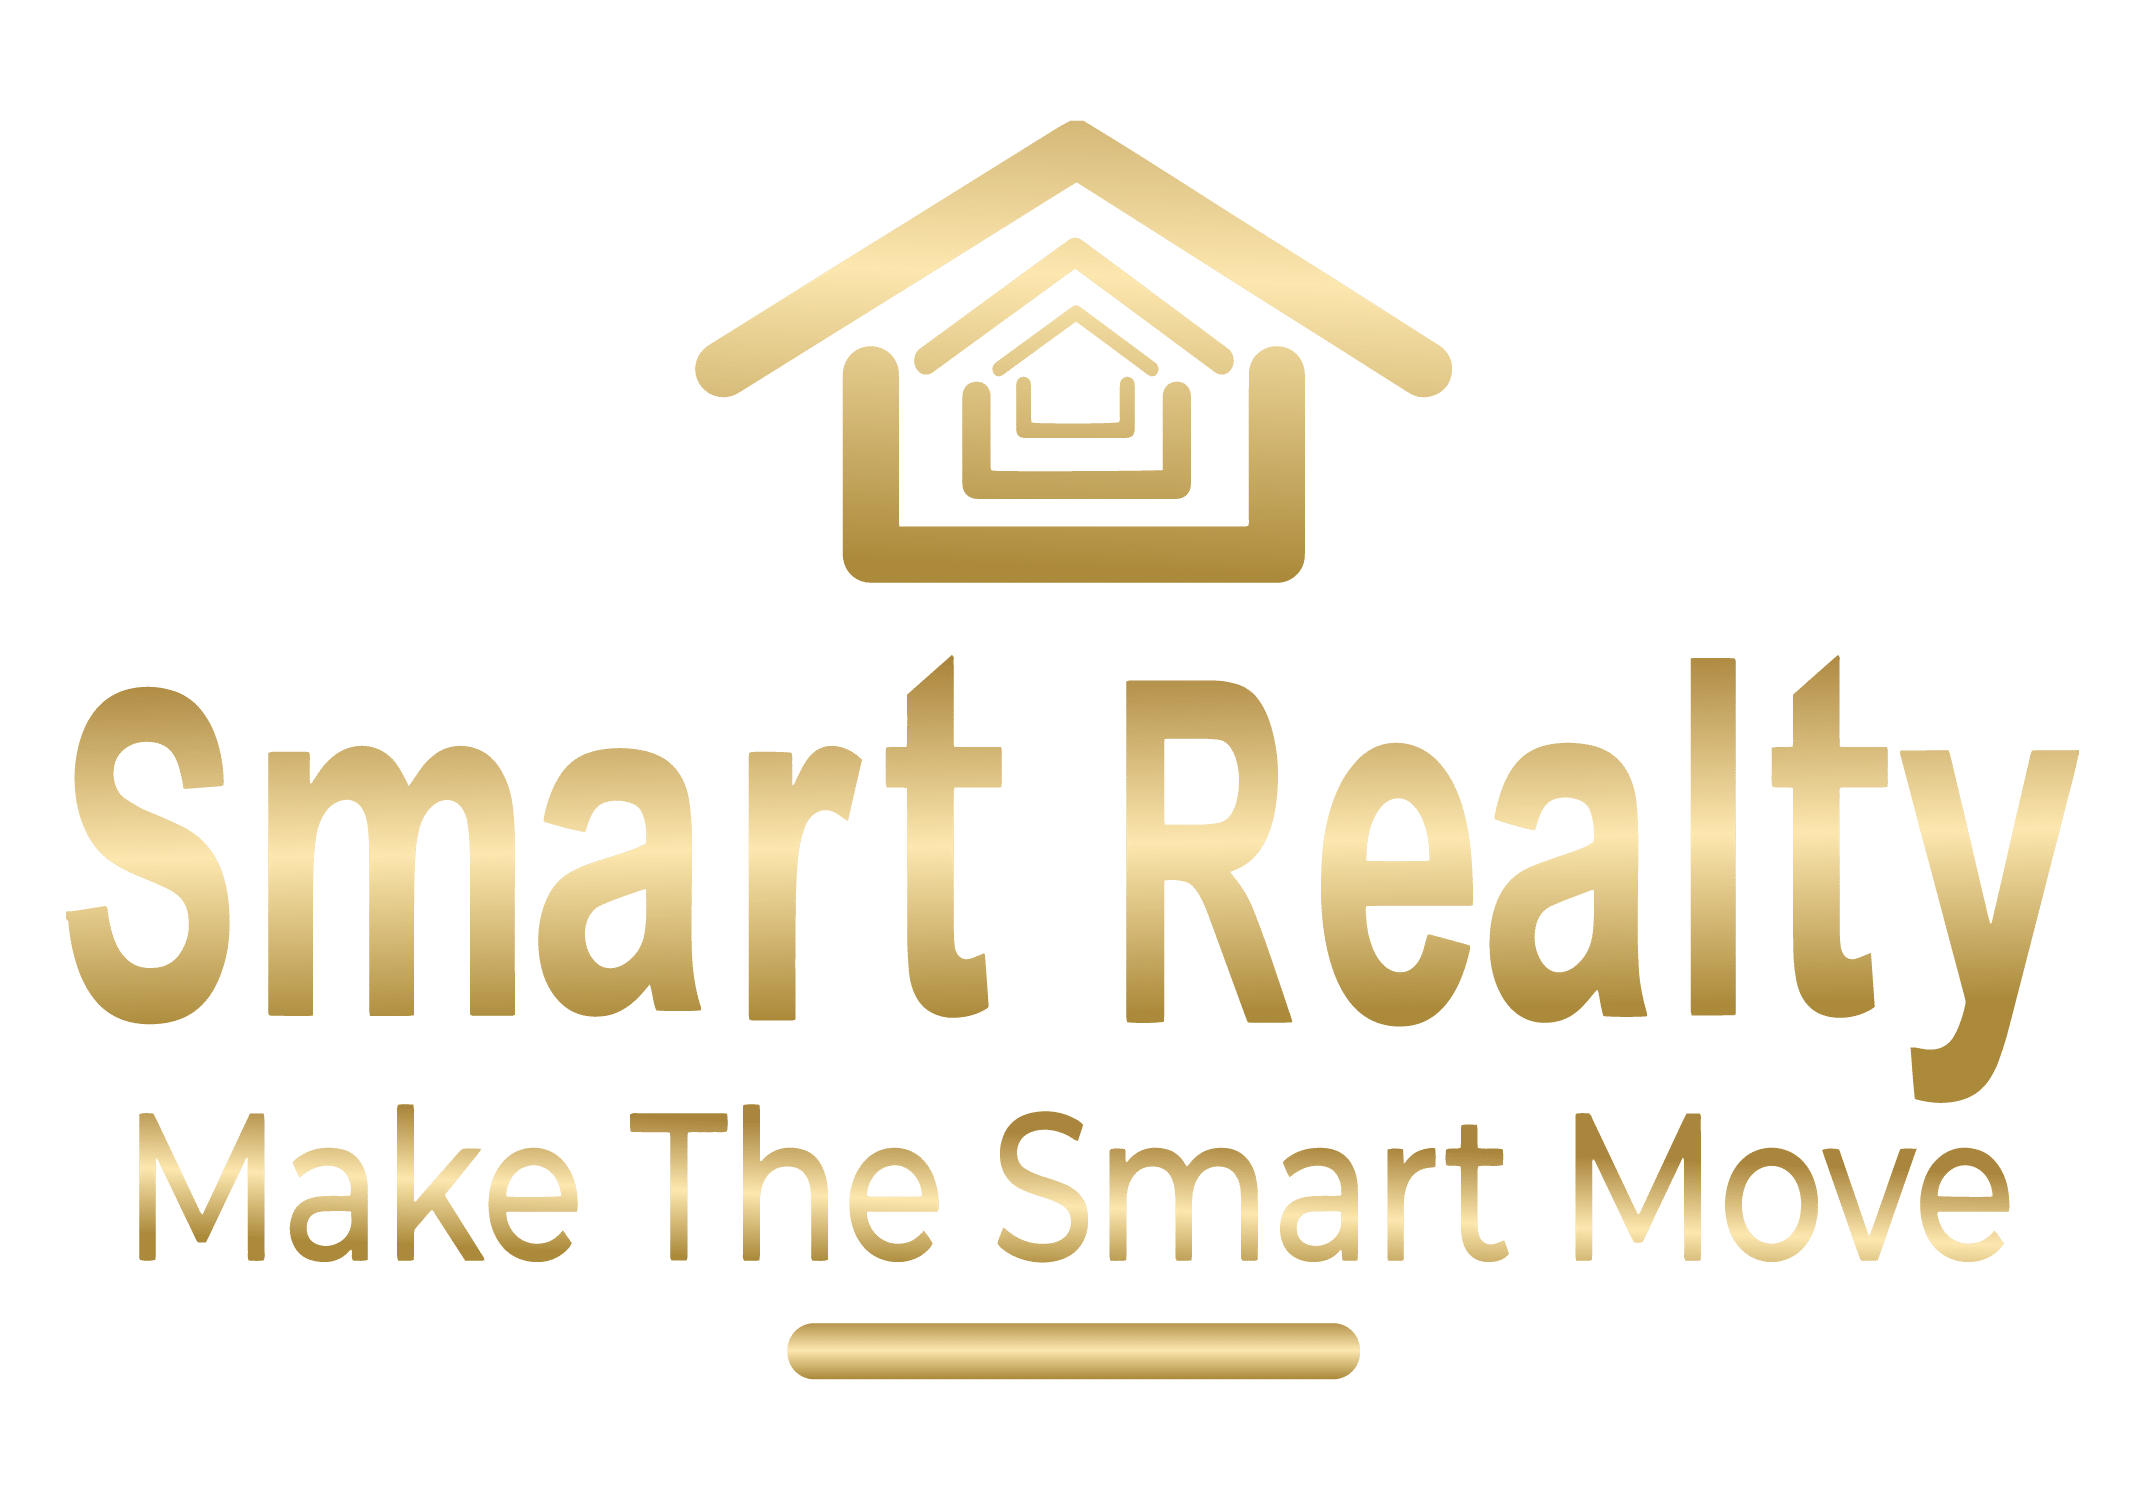 Smart Realty Pty Ltd - Kenwick